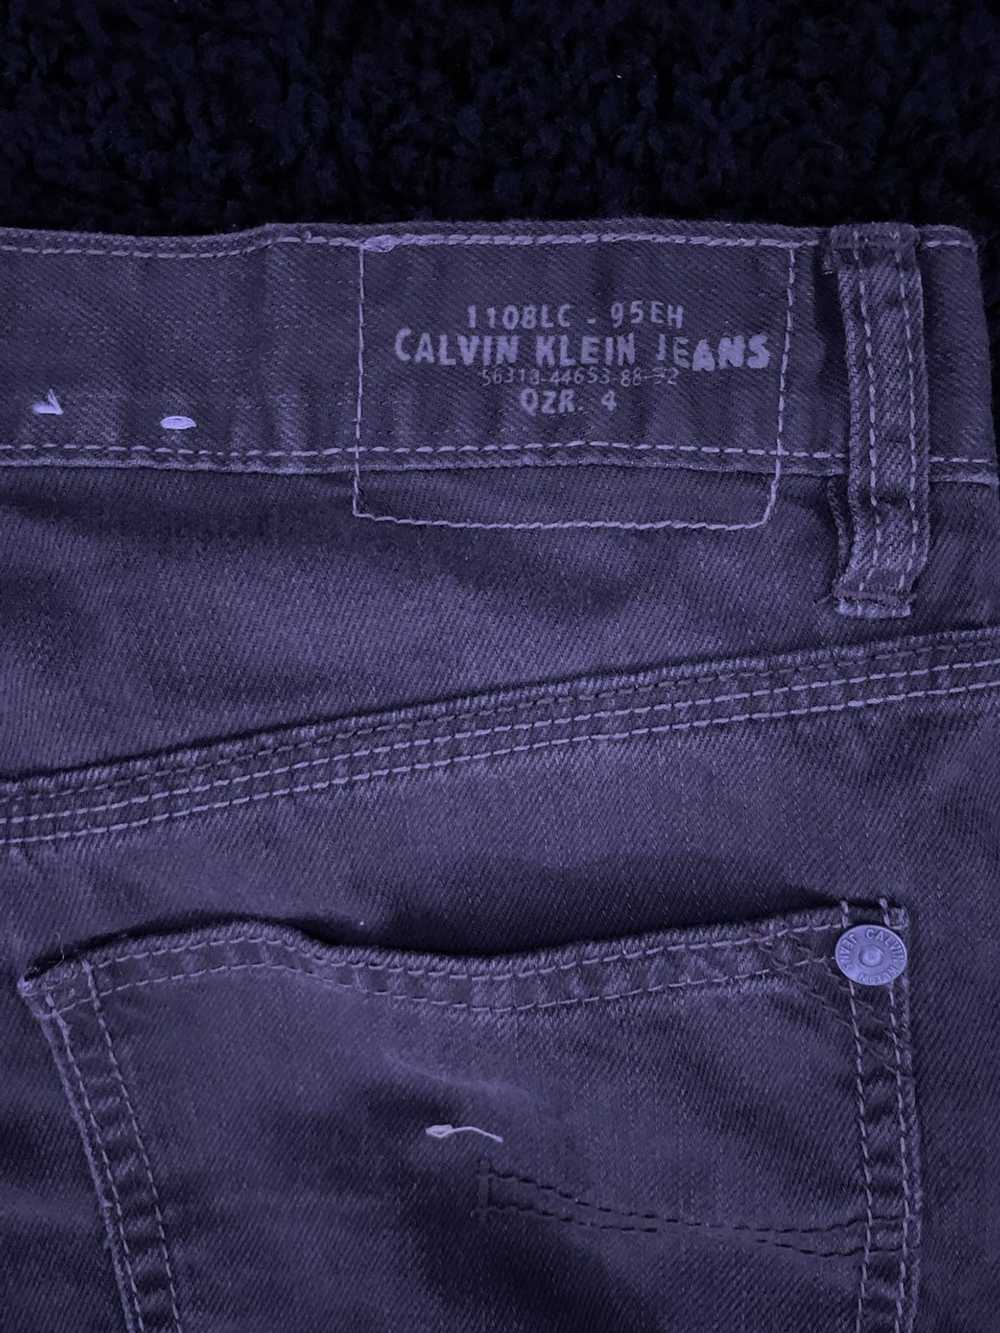 Calvin Klein × Designer × Rare CALVIN KLEIN VINTA… - image 5